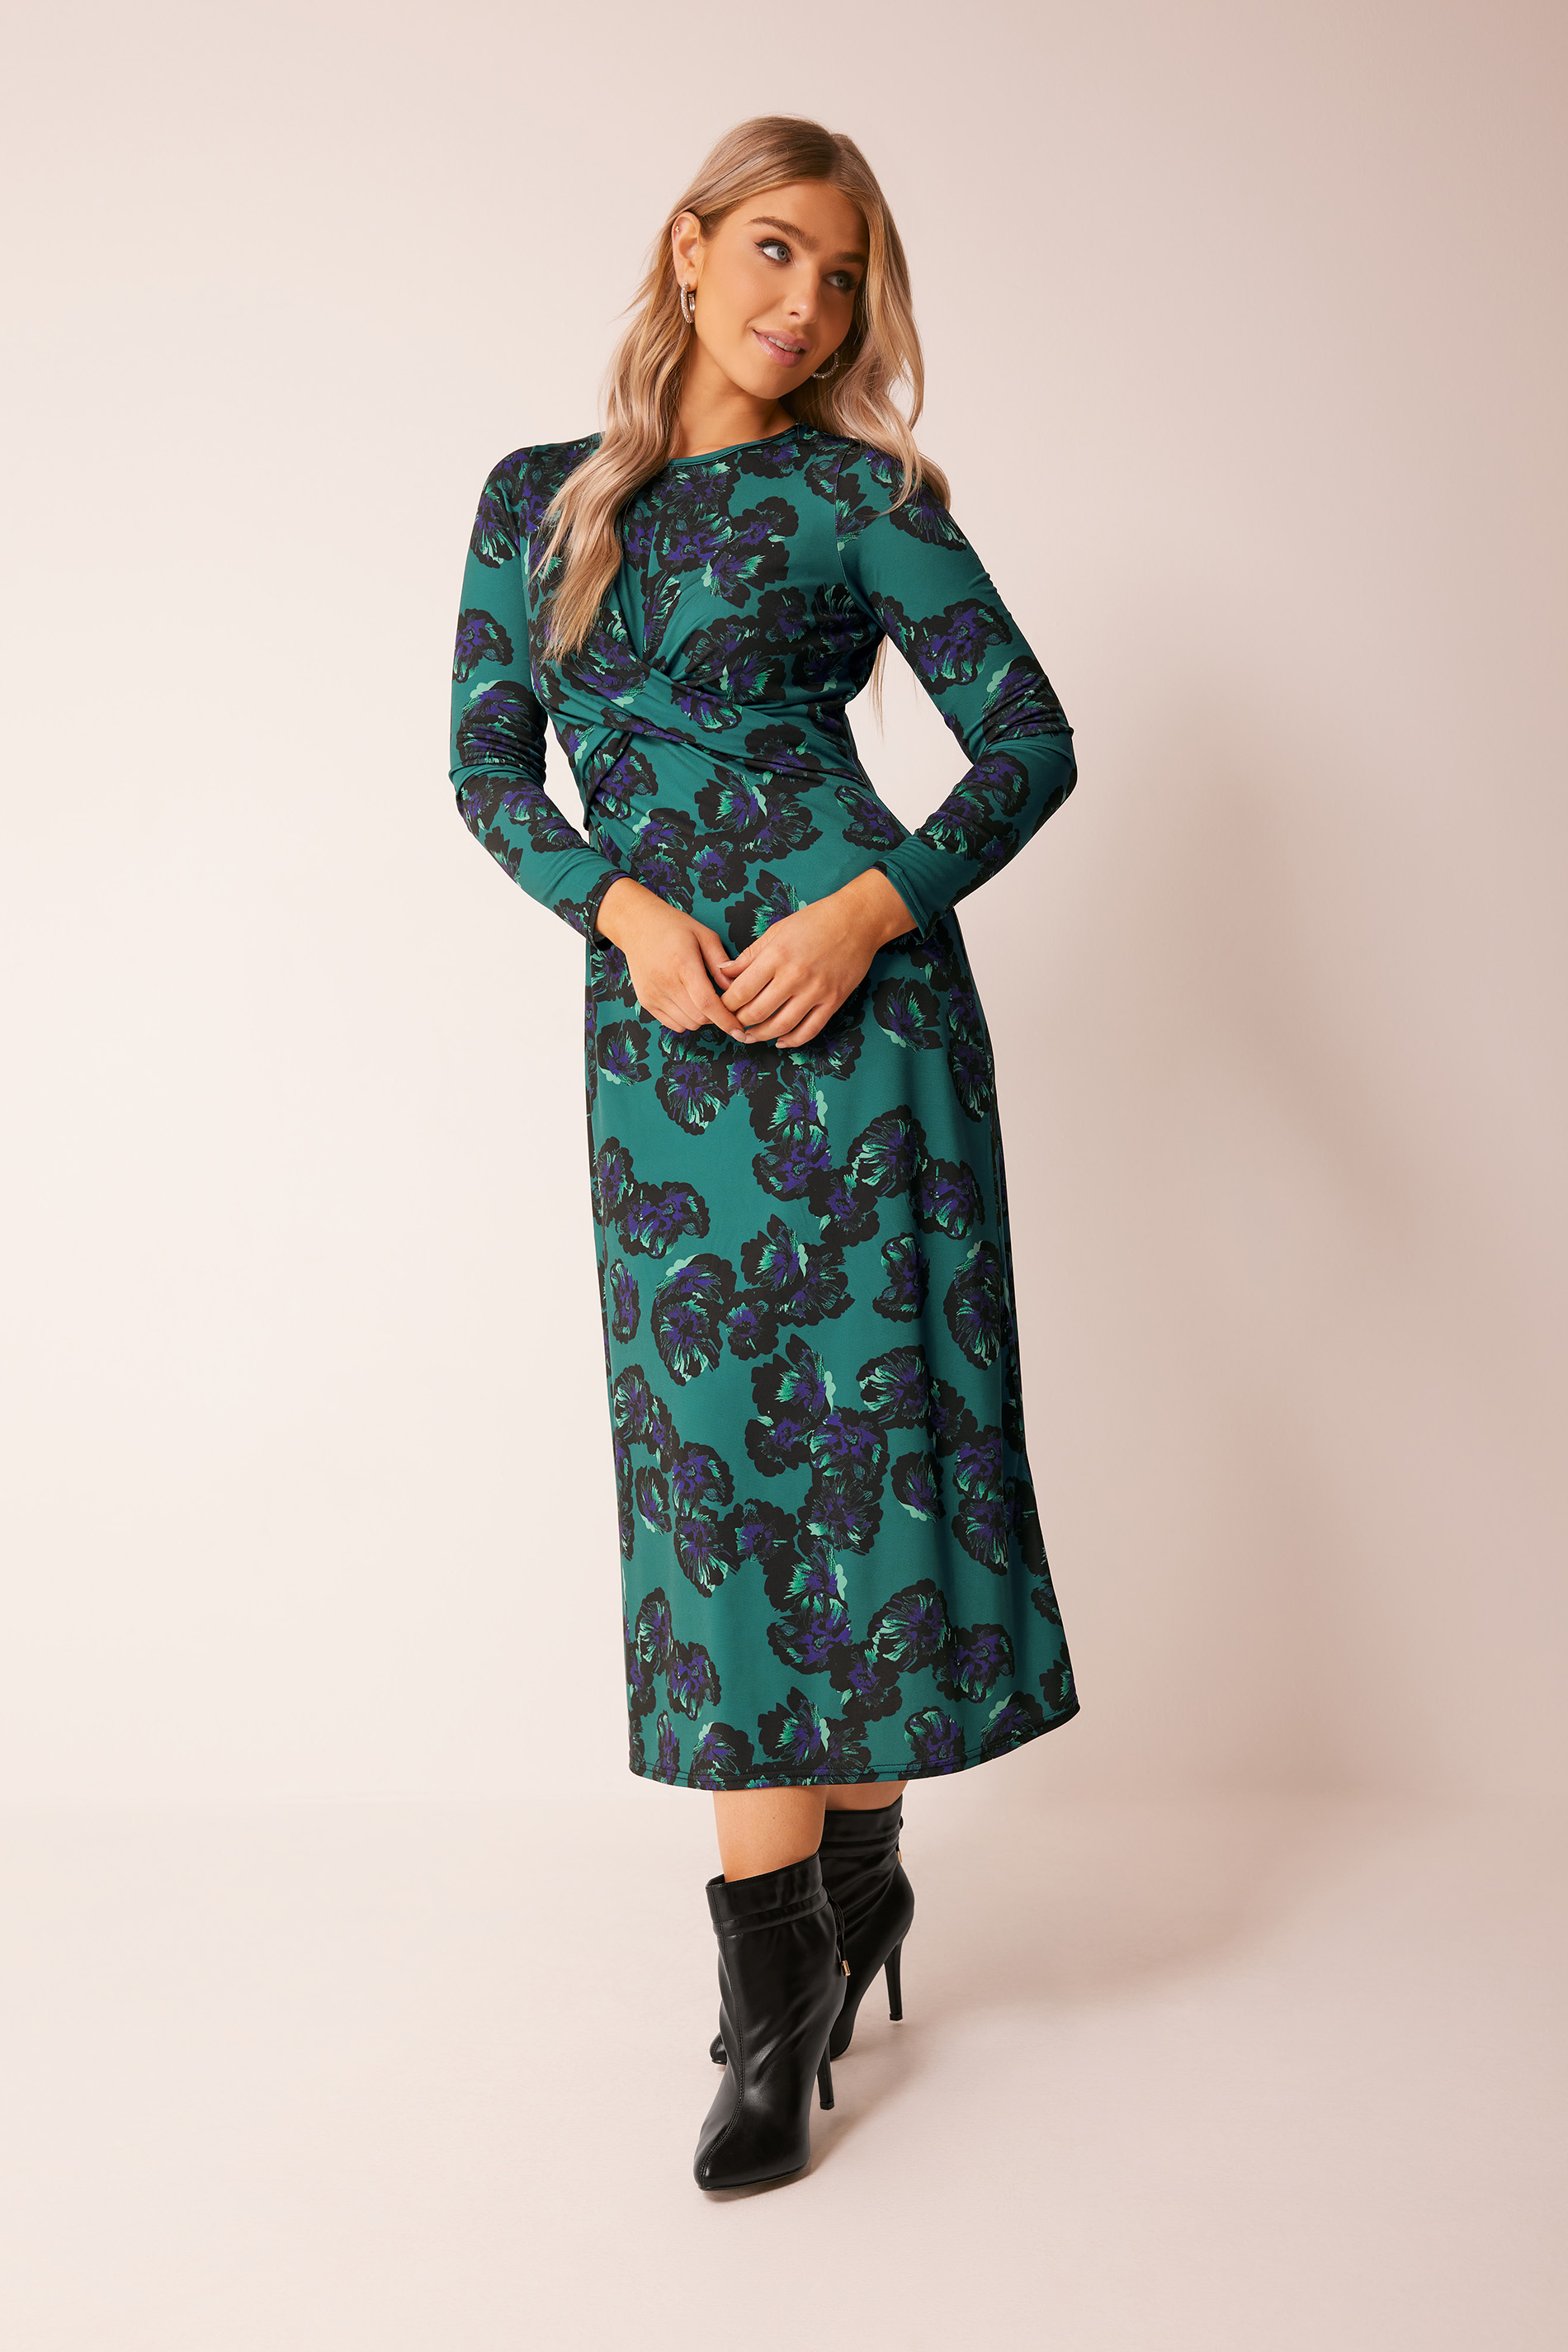 M&Co Dark Green Floral Twist Midaxi Dress | M&Co  1